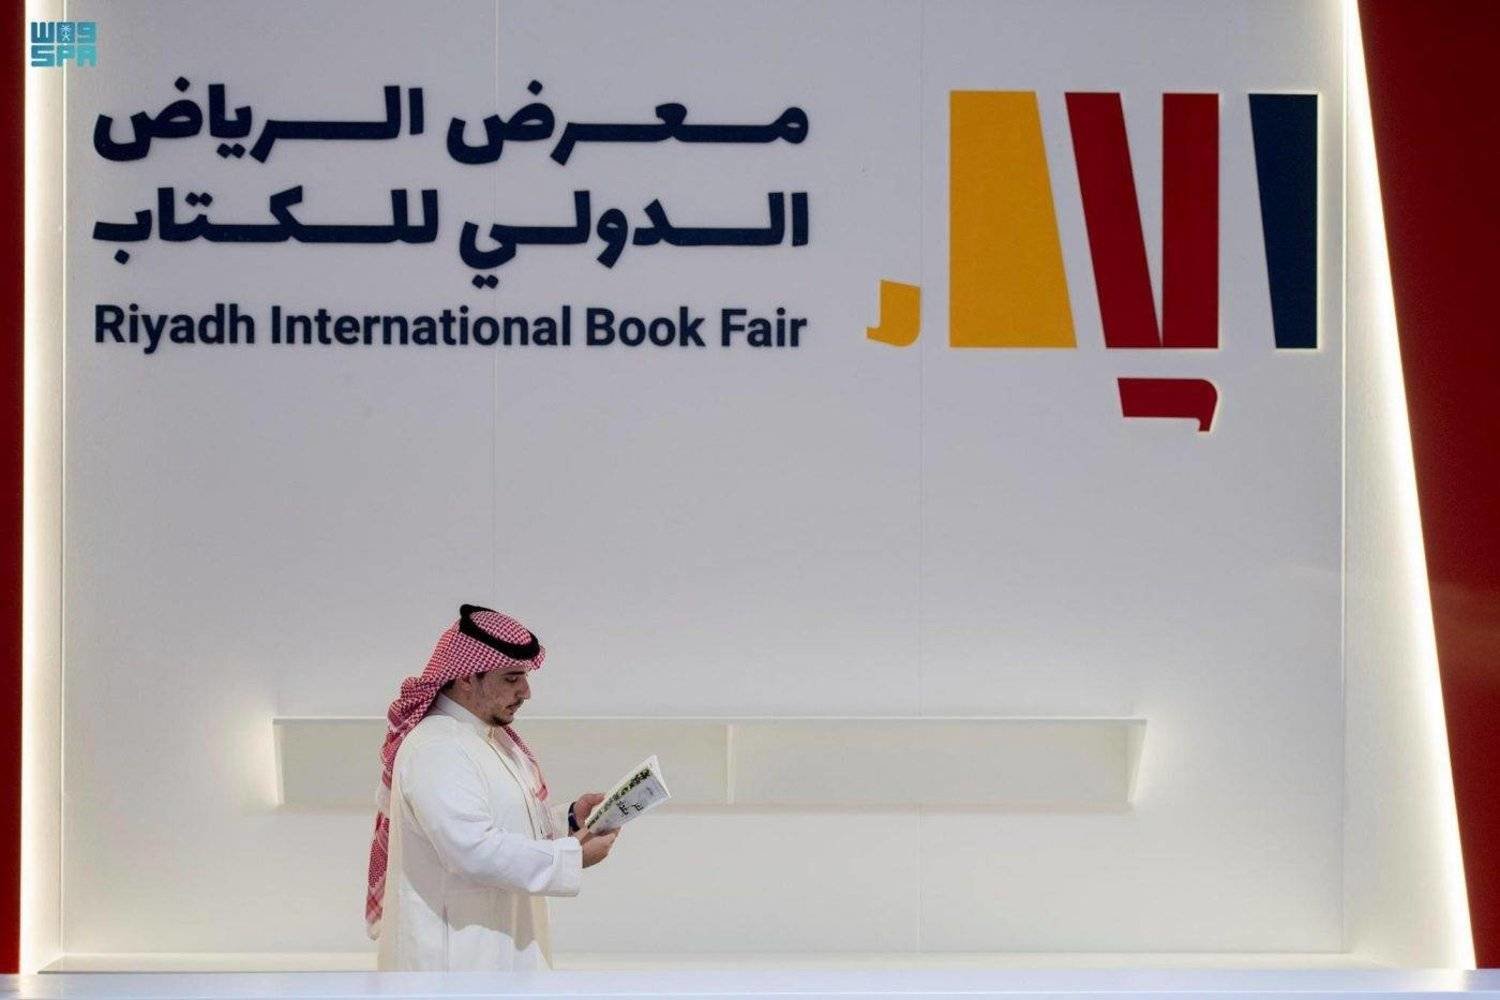 رحلة معرفية جديدة تنطلق مع معرض الرياض الدولي للكتاب بمشاركة واسعة من دور نشر عربية ودولية (واس)